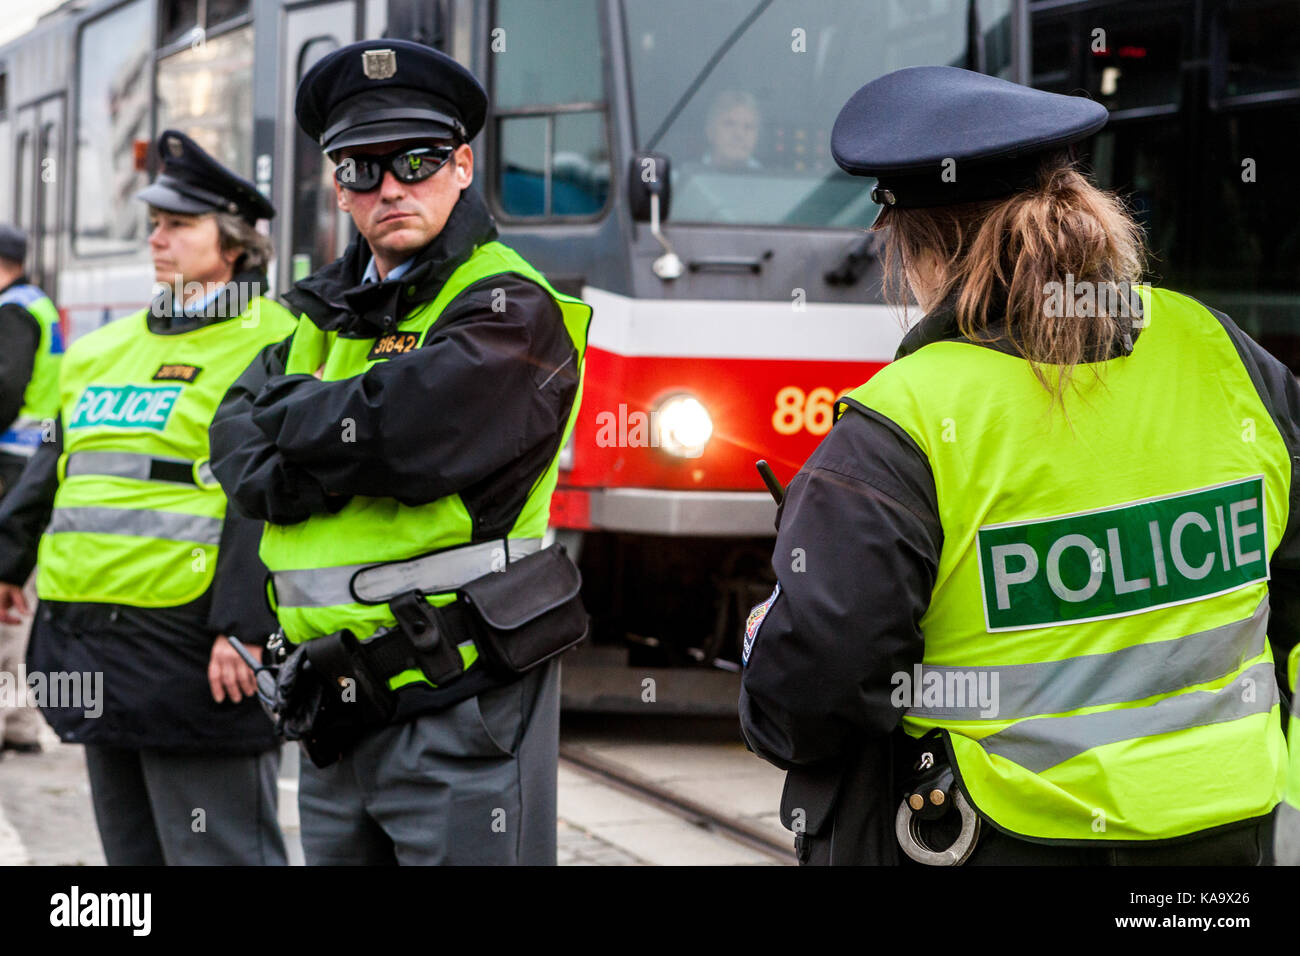 Czech police and tram, Prague, Czech Republic Stock Photo - Alamy